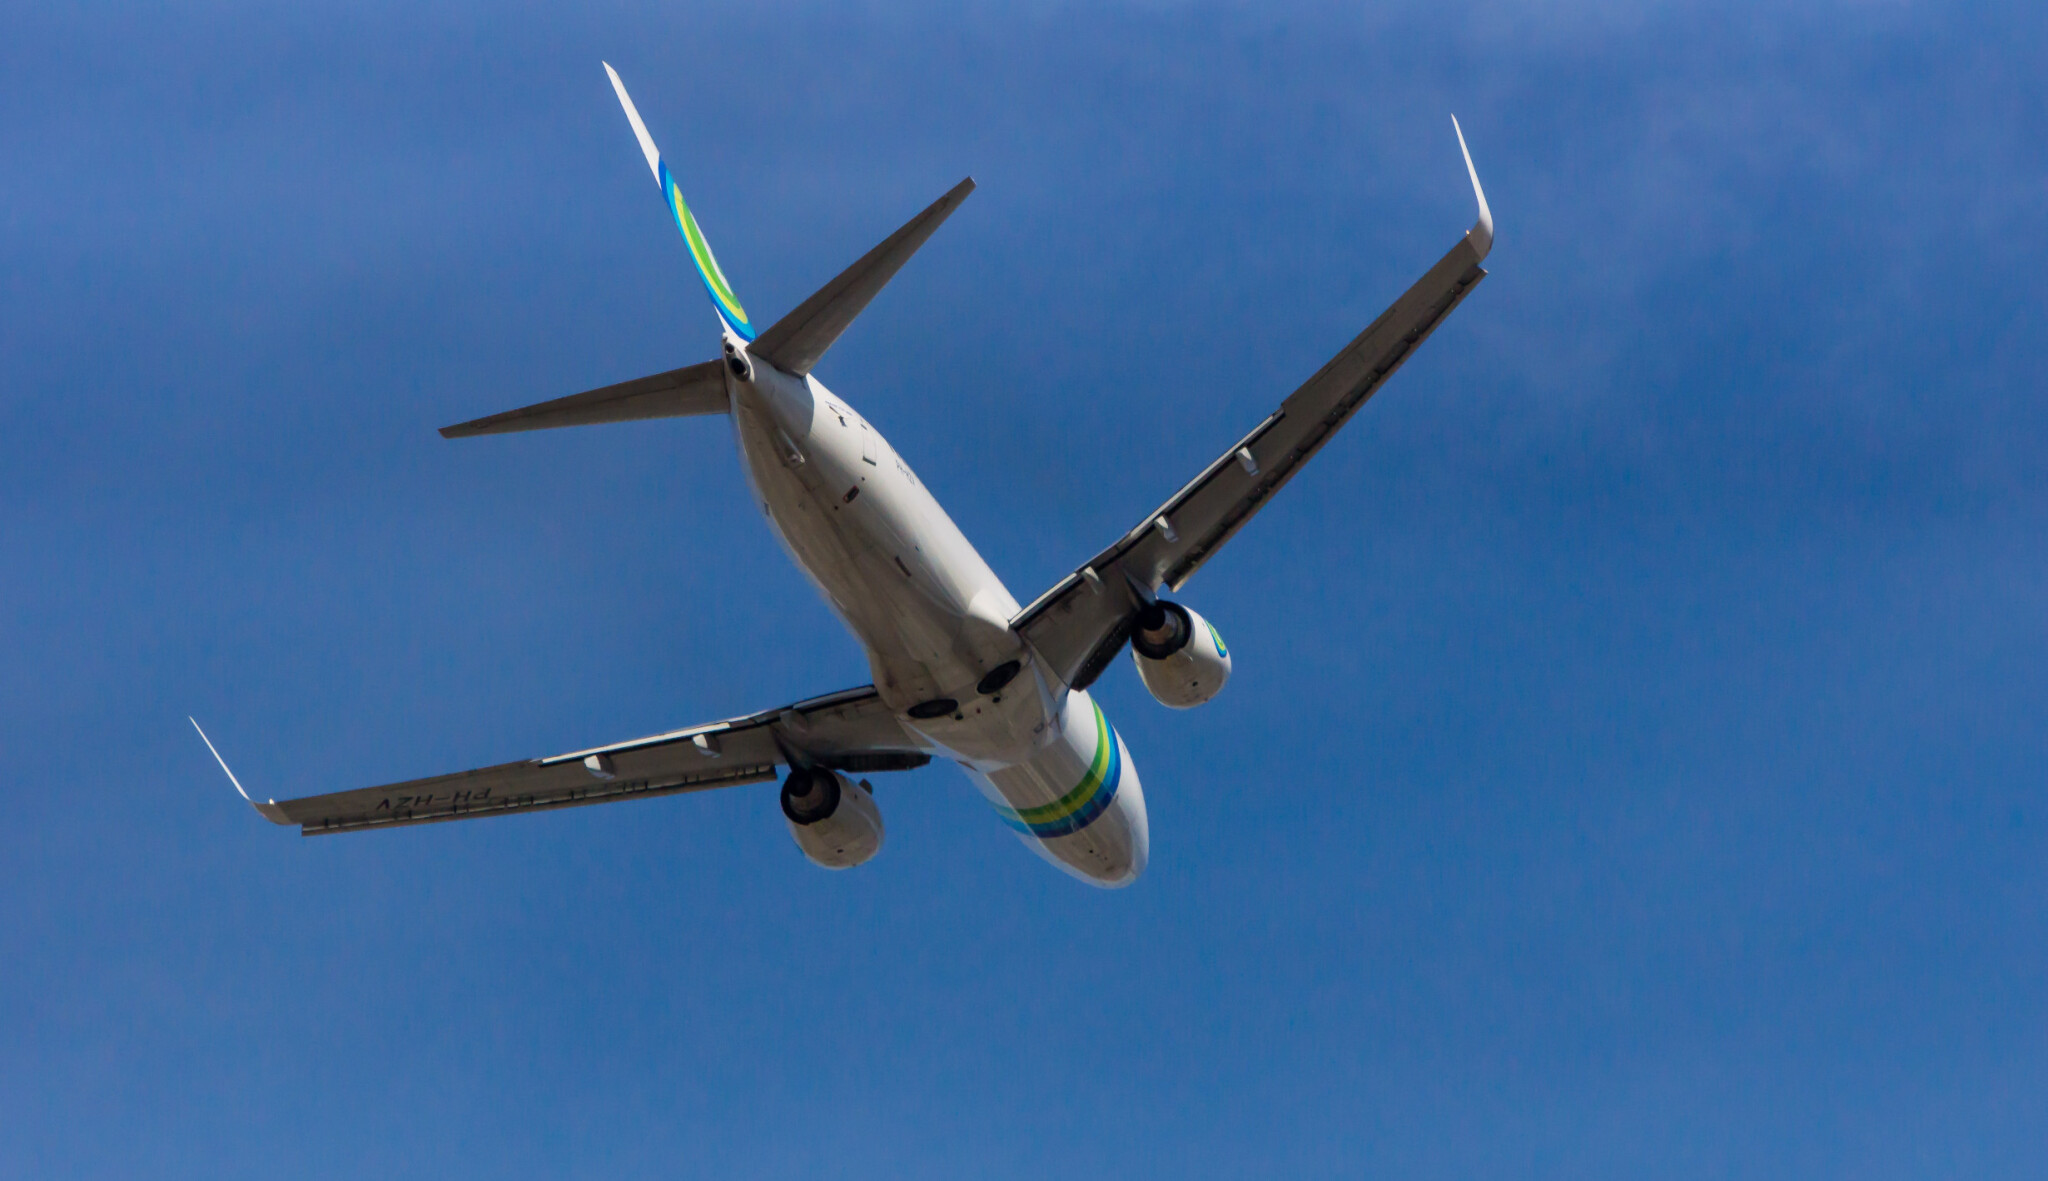 Letecká osobní doprava loni klesla nejvíce v historii. Propadla se o dvě třetiny